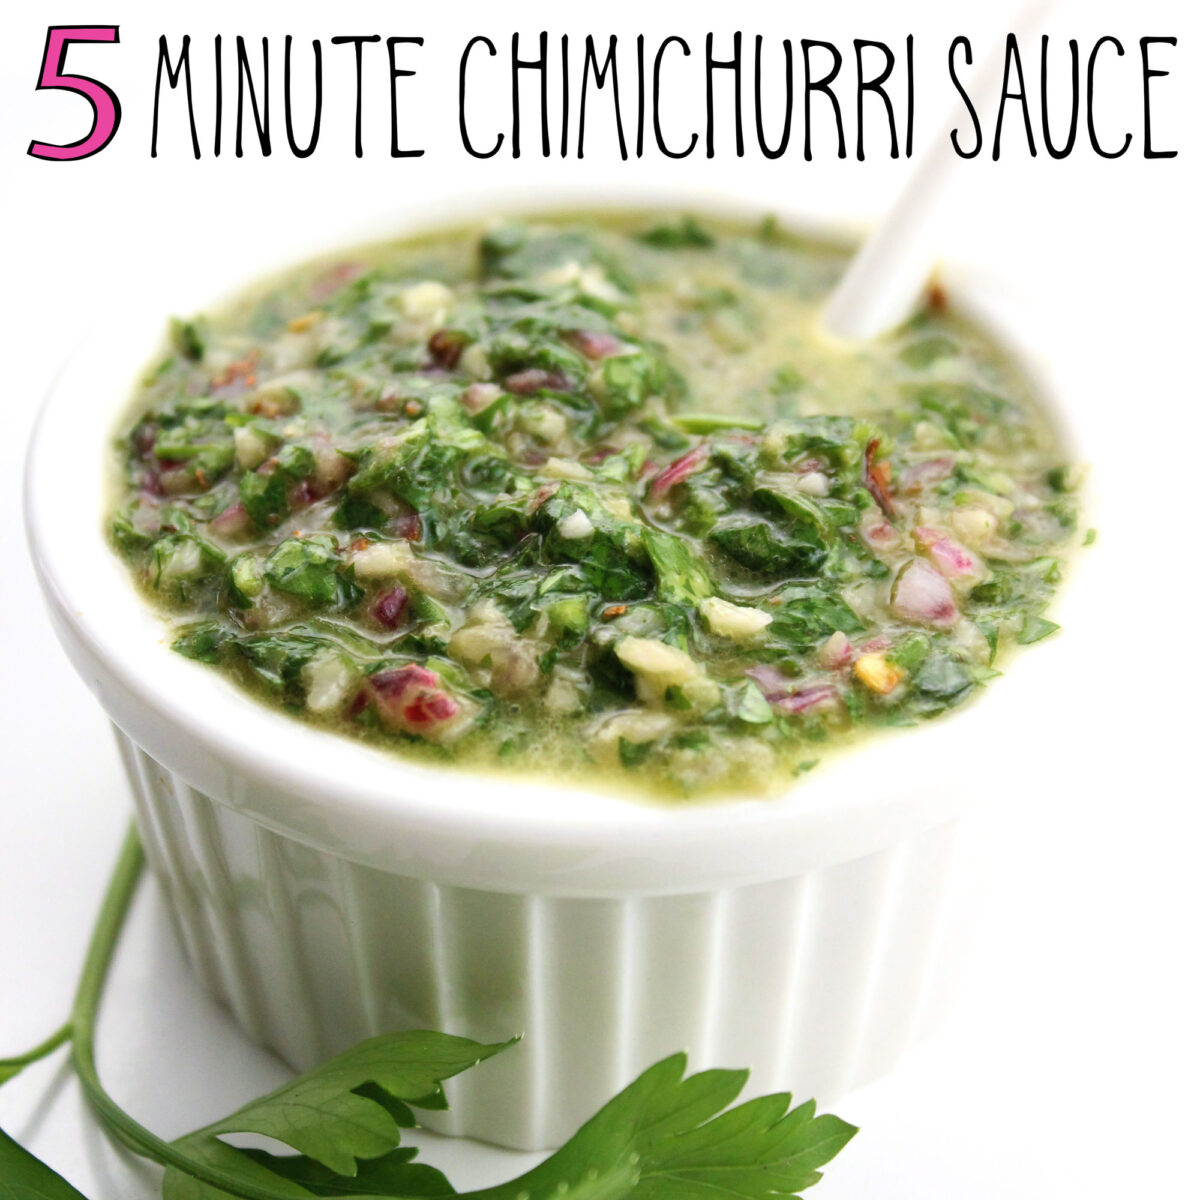 5-Minute Chimichurri Sauce